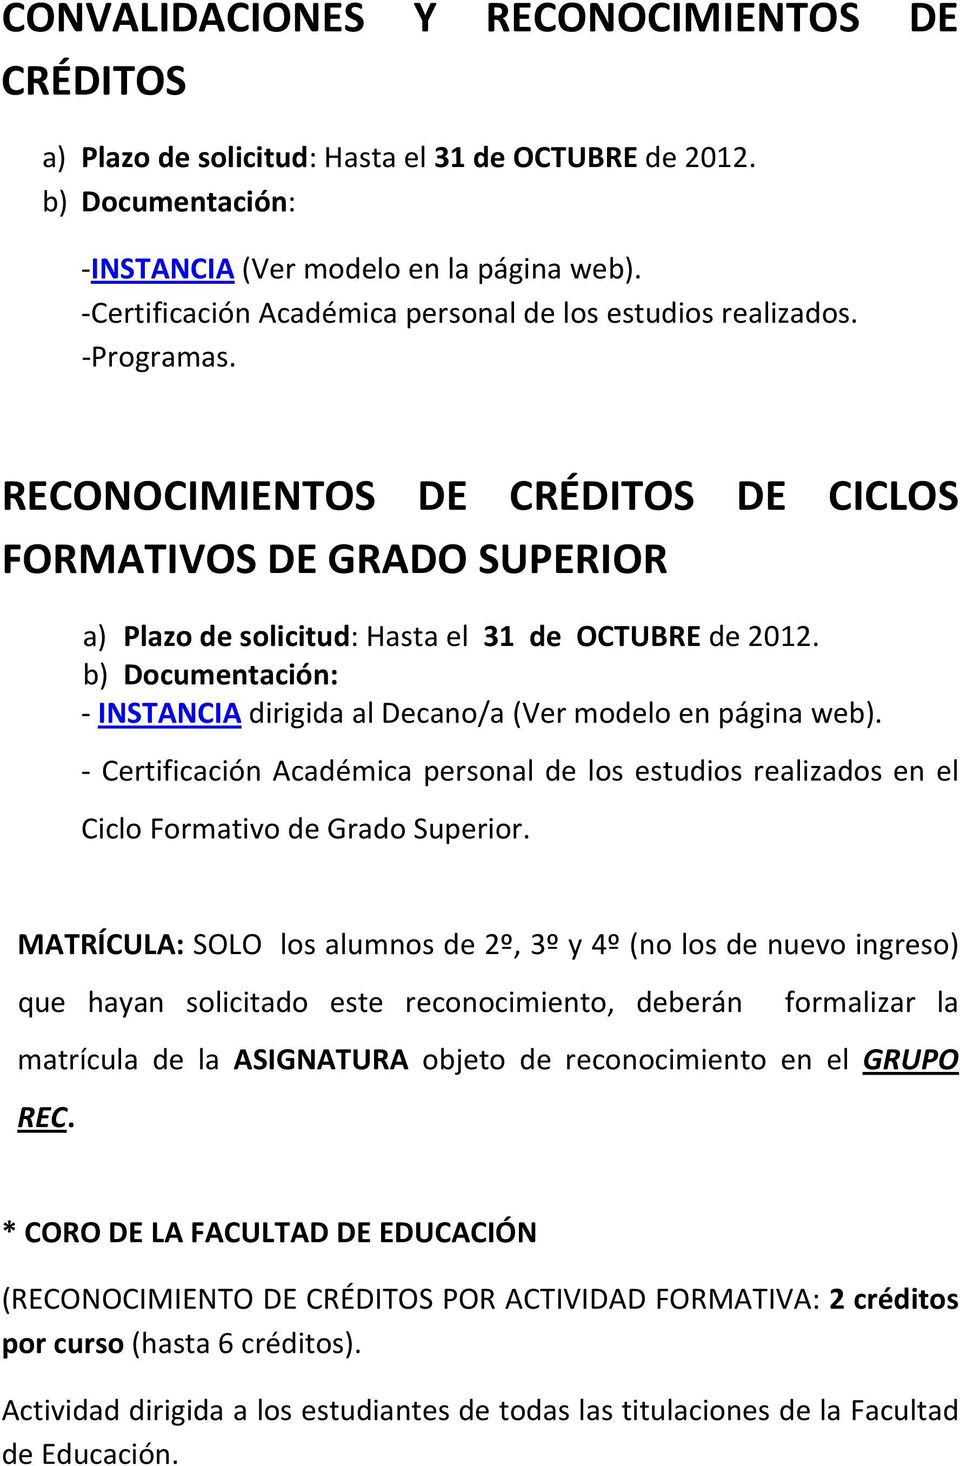 b) Documentación: INSTANCIA dirigida al Decano/a (Ver modelo en página web). Certificación Académica personal de los estudios realizados en el Ciclo Formativo de Grado Superior.